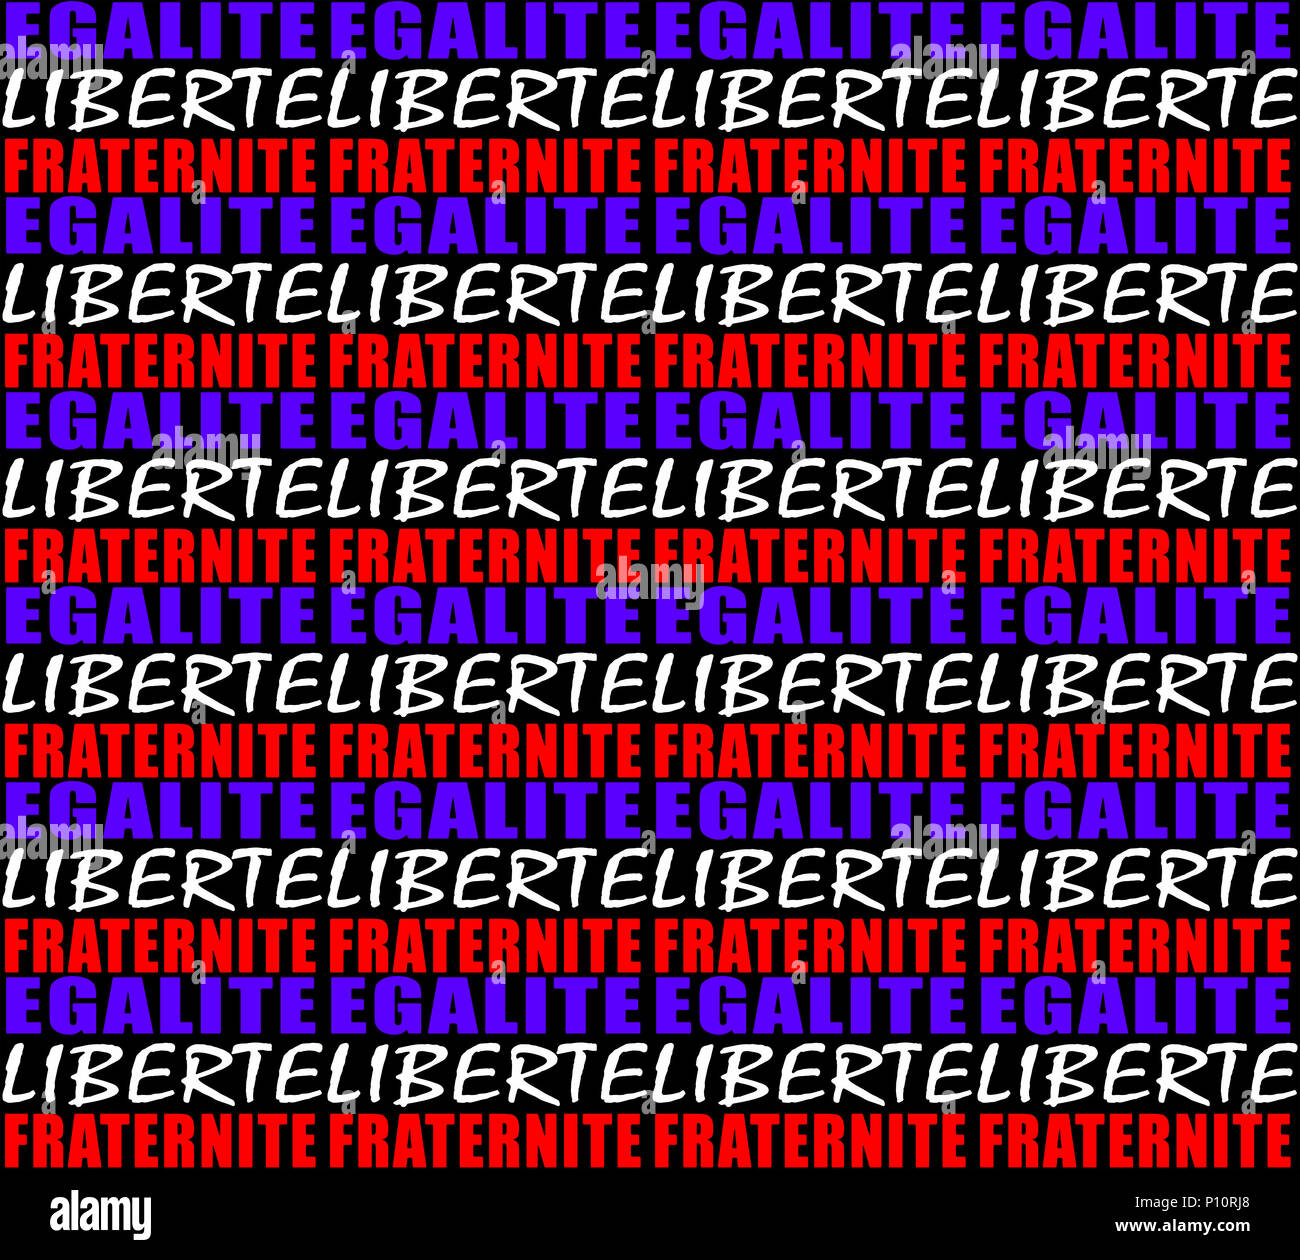 Französische Revolution Feier typografische Gestaltung in Blau-weiß und rot Stockfoto